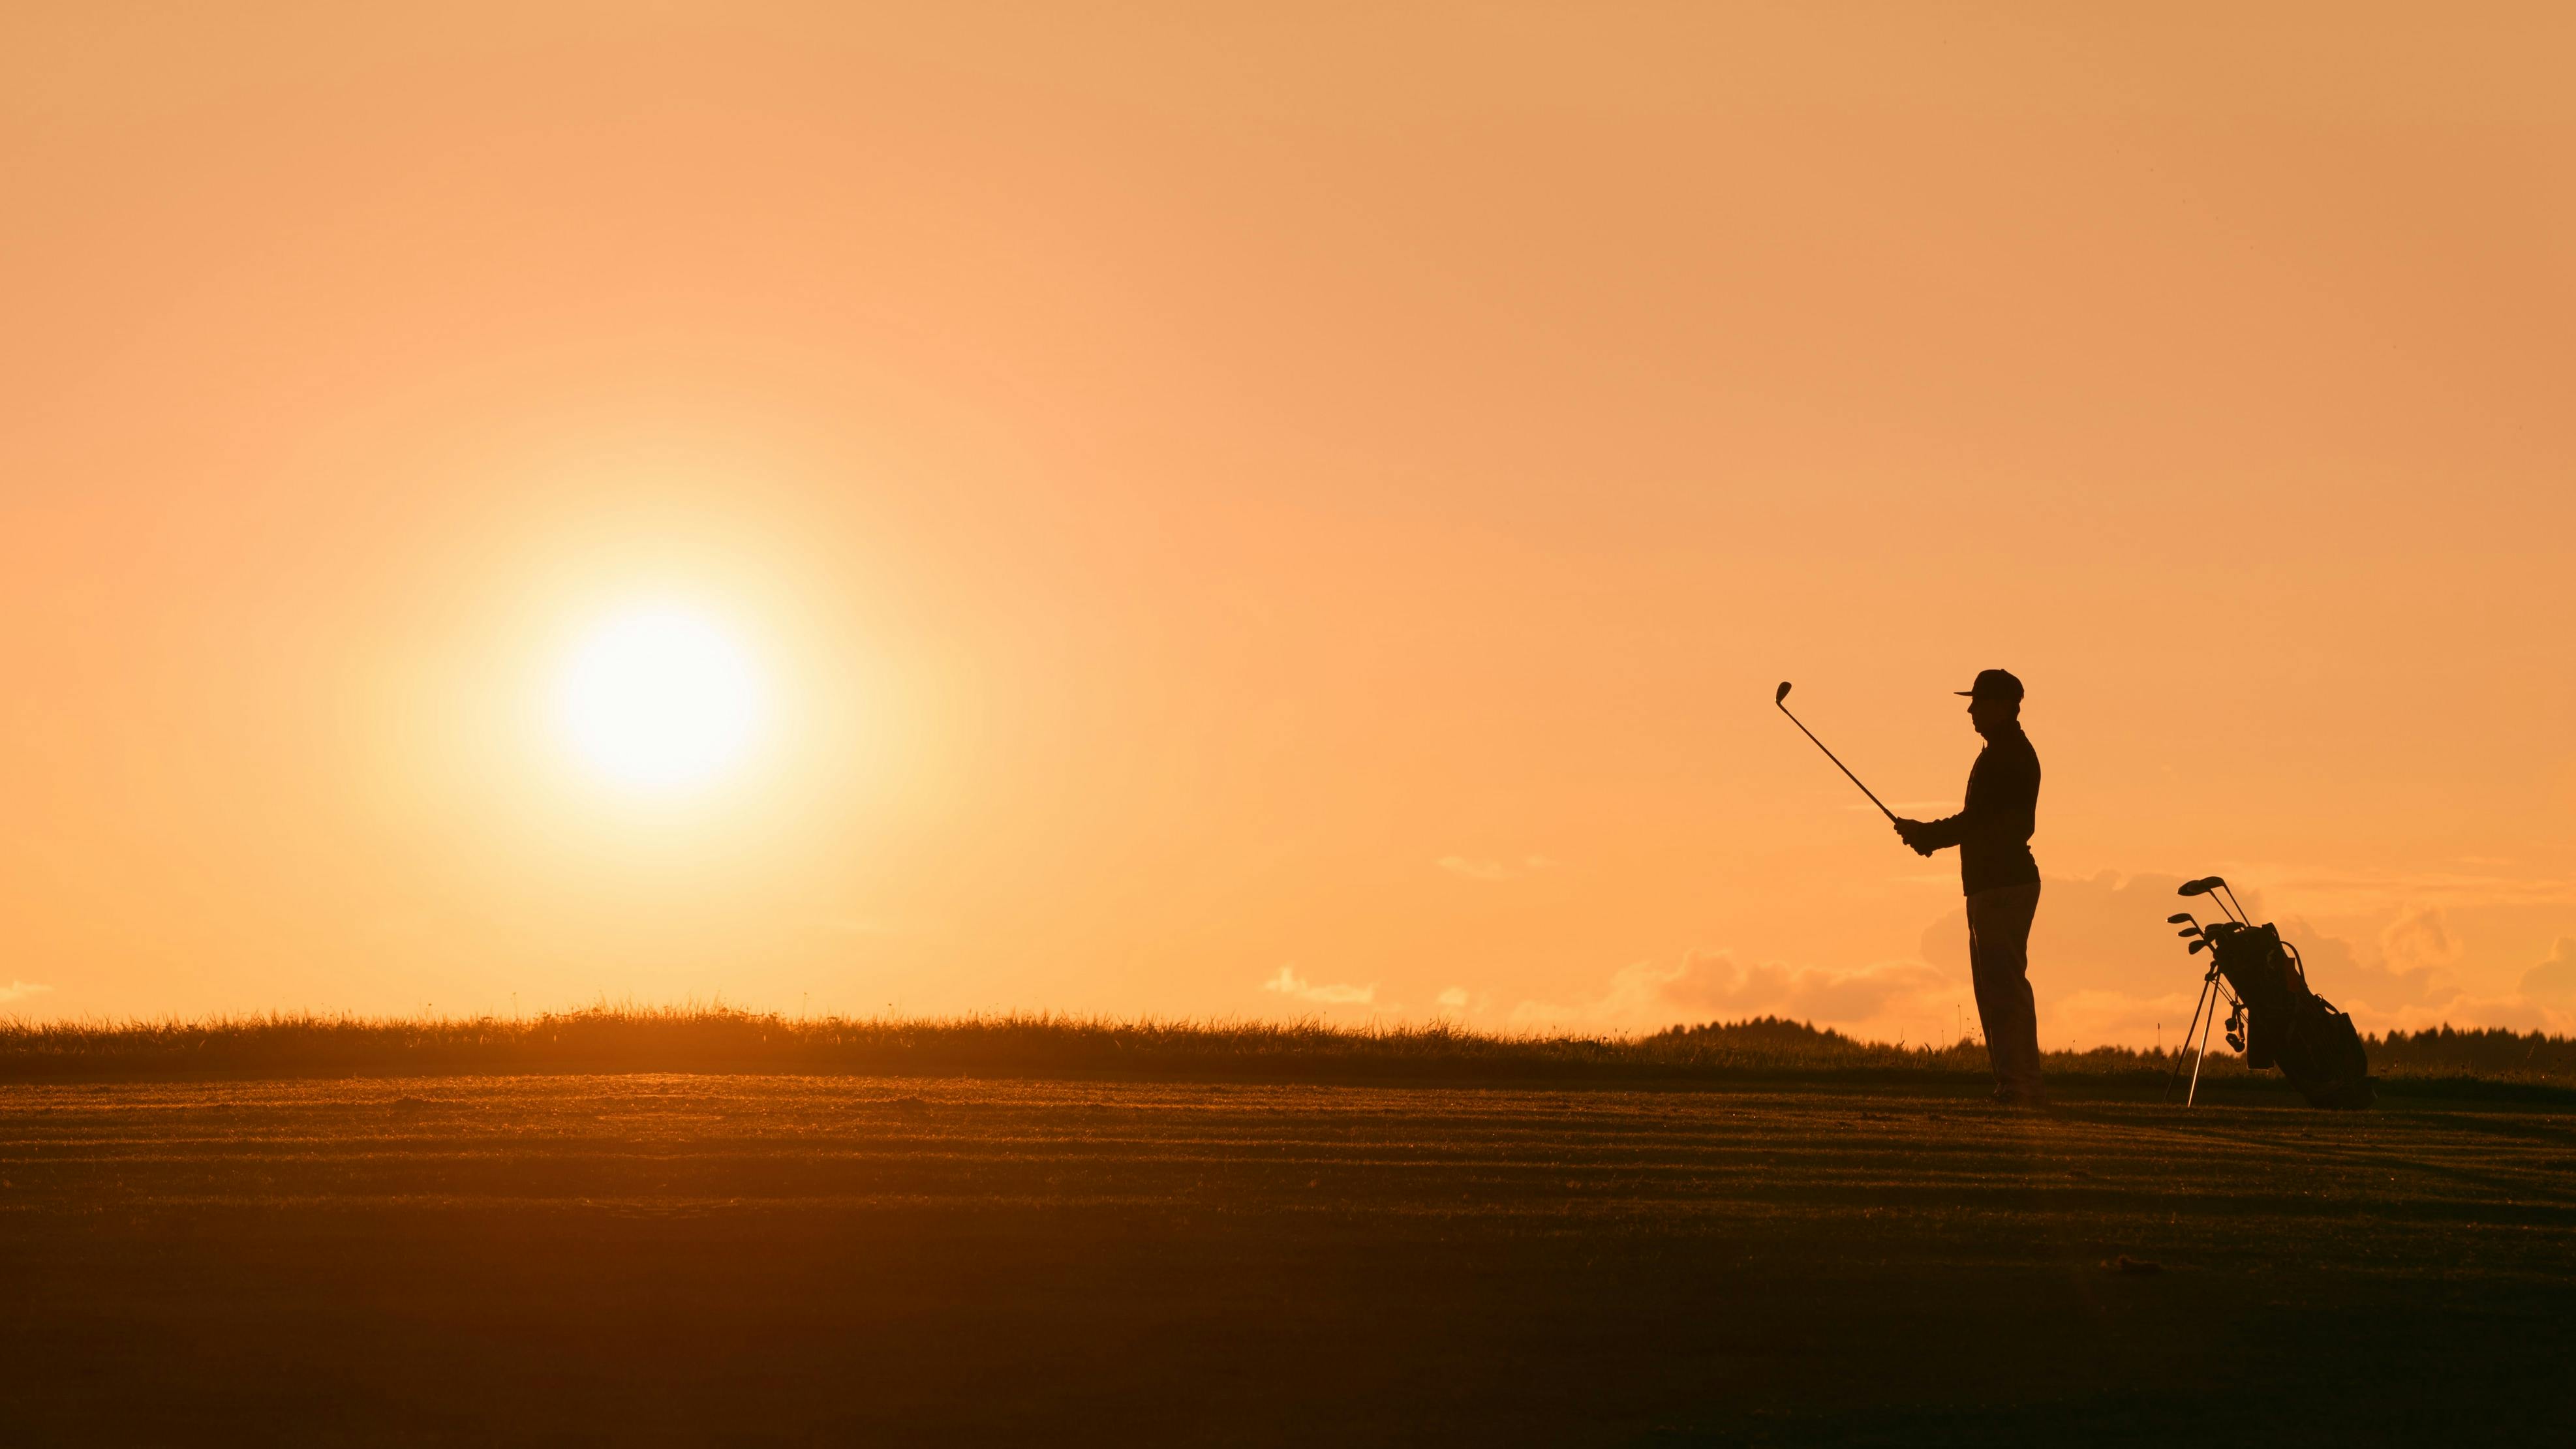 A golfer lining up a golf shot at sundown.